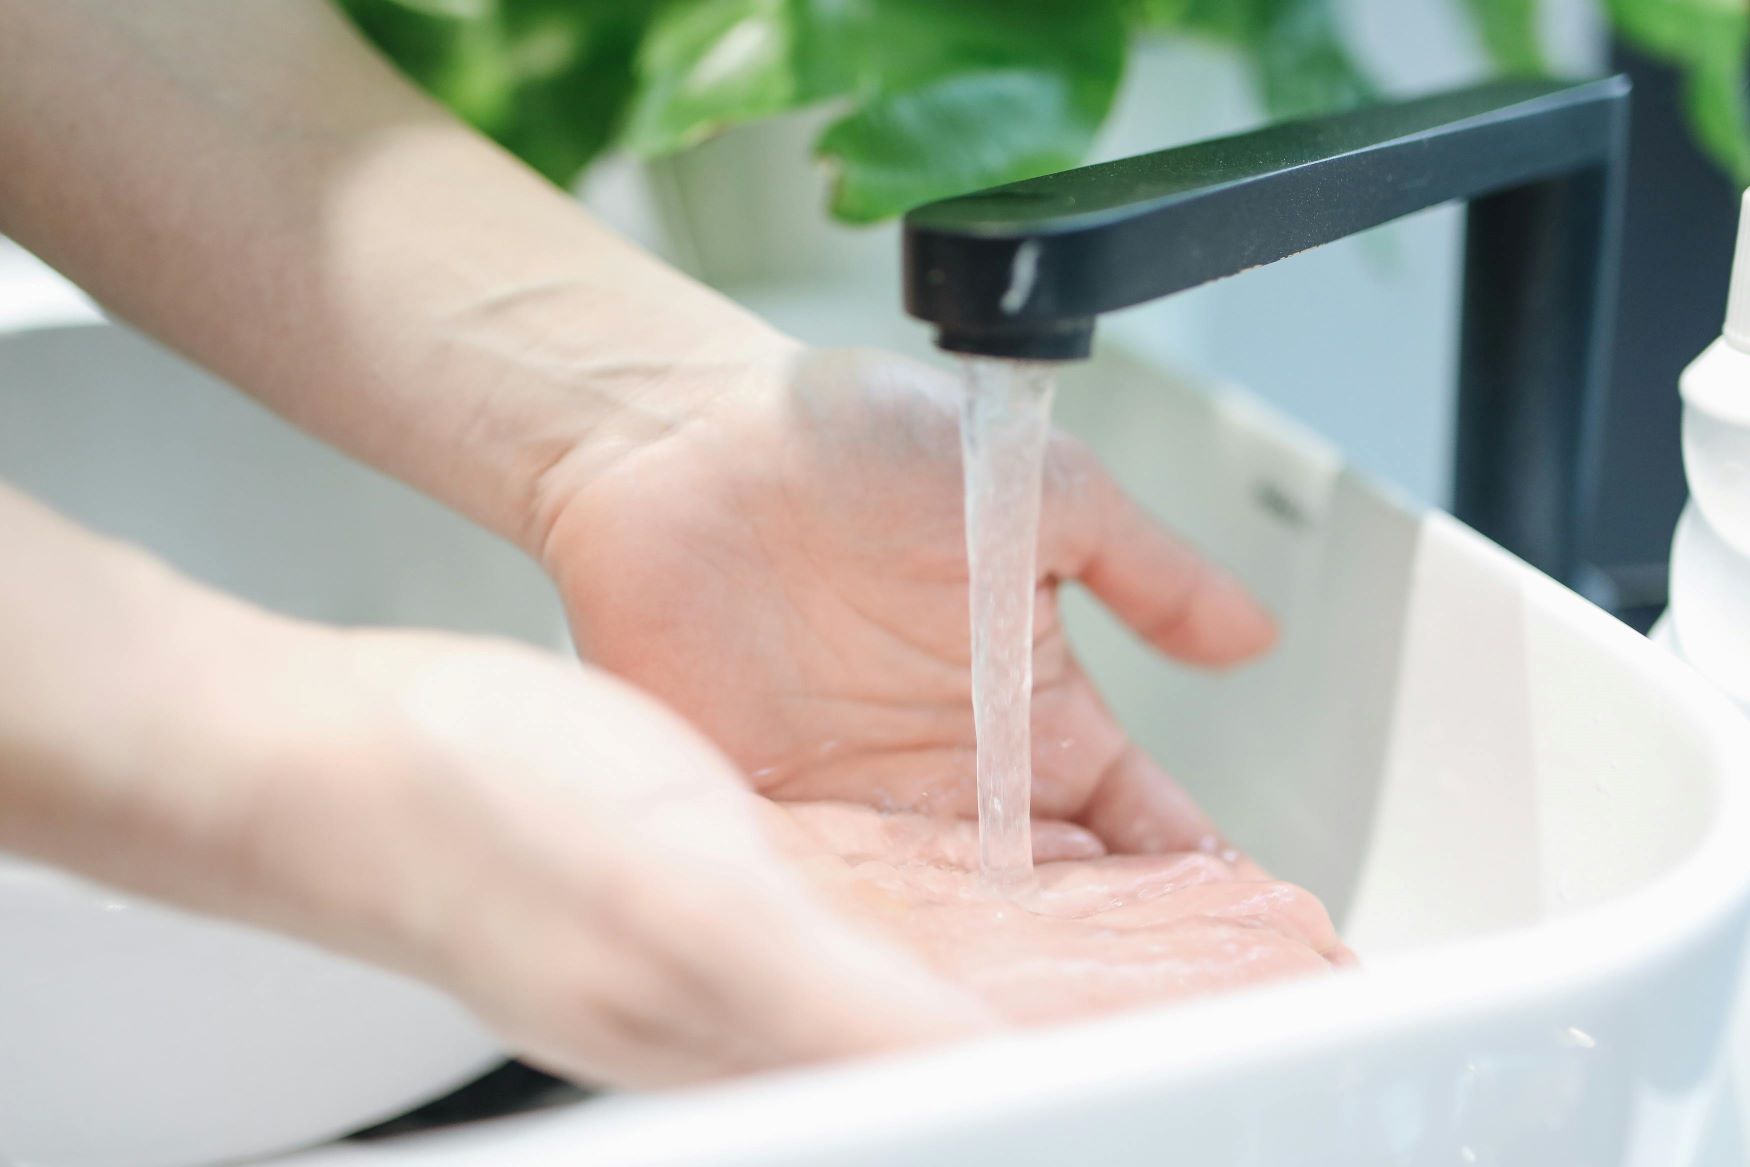 lavage de mains, source https://www.pexels.com/fr-fr/photo/personne-se-laver-les-mains-3736403/